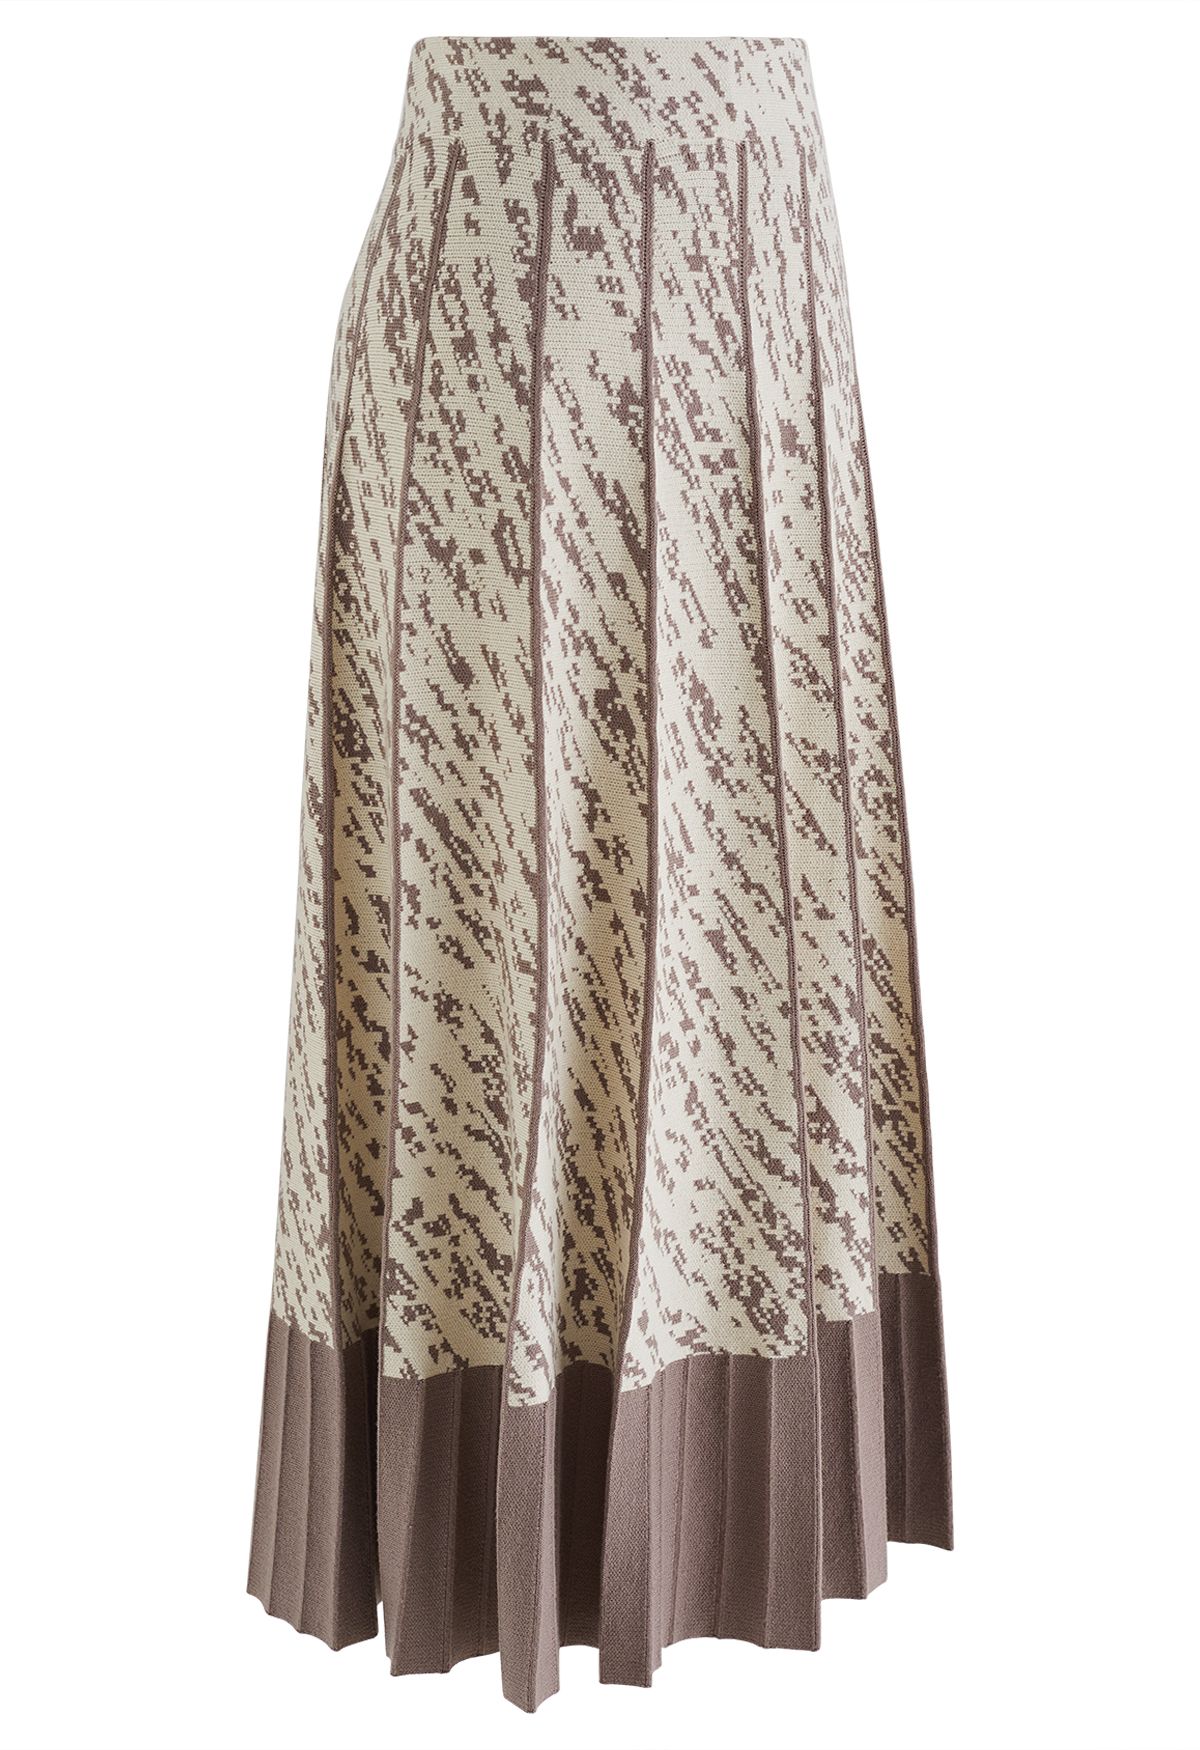 Falda de punto plisada con dobladillo en contraste en marrón